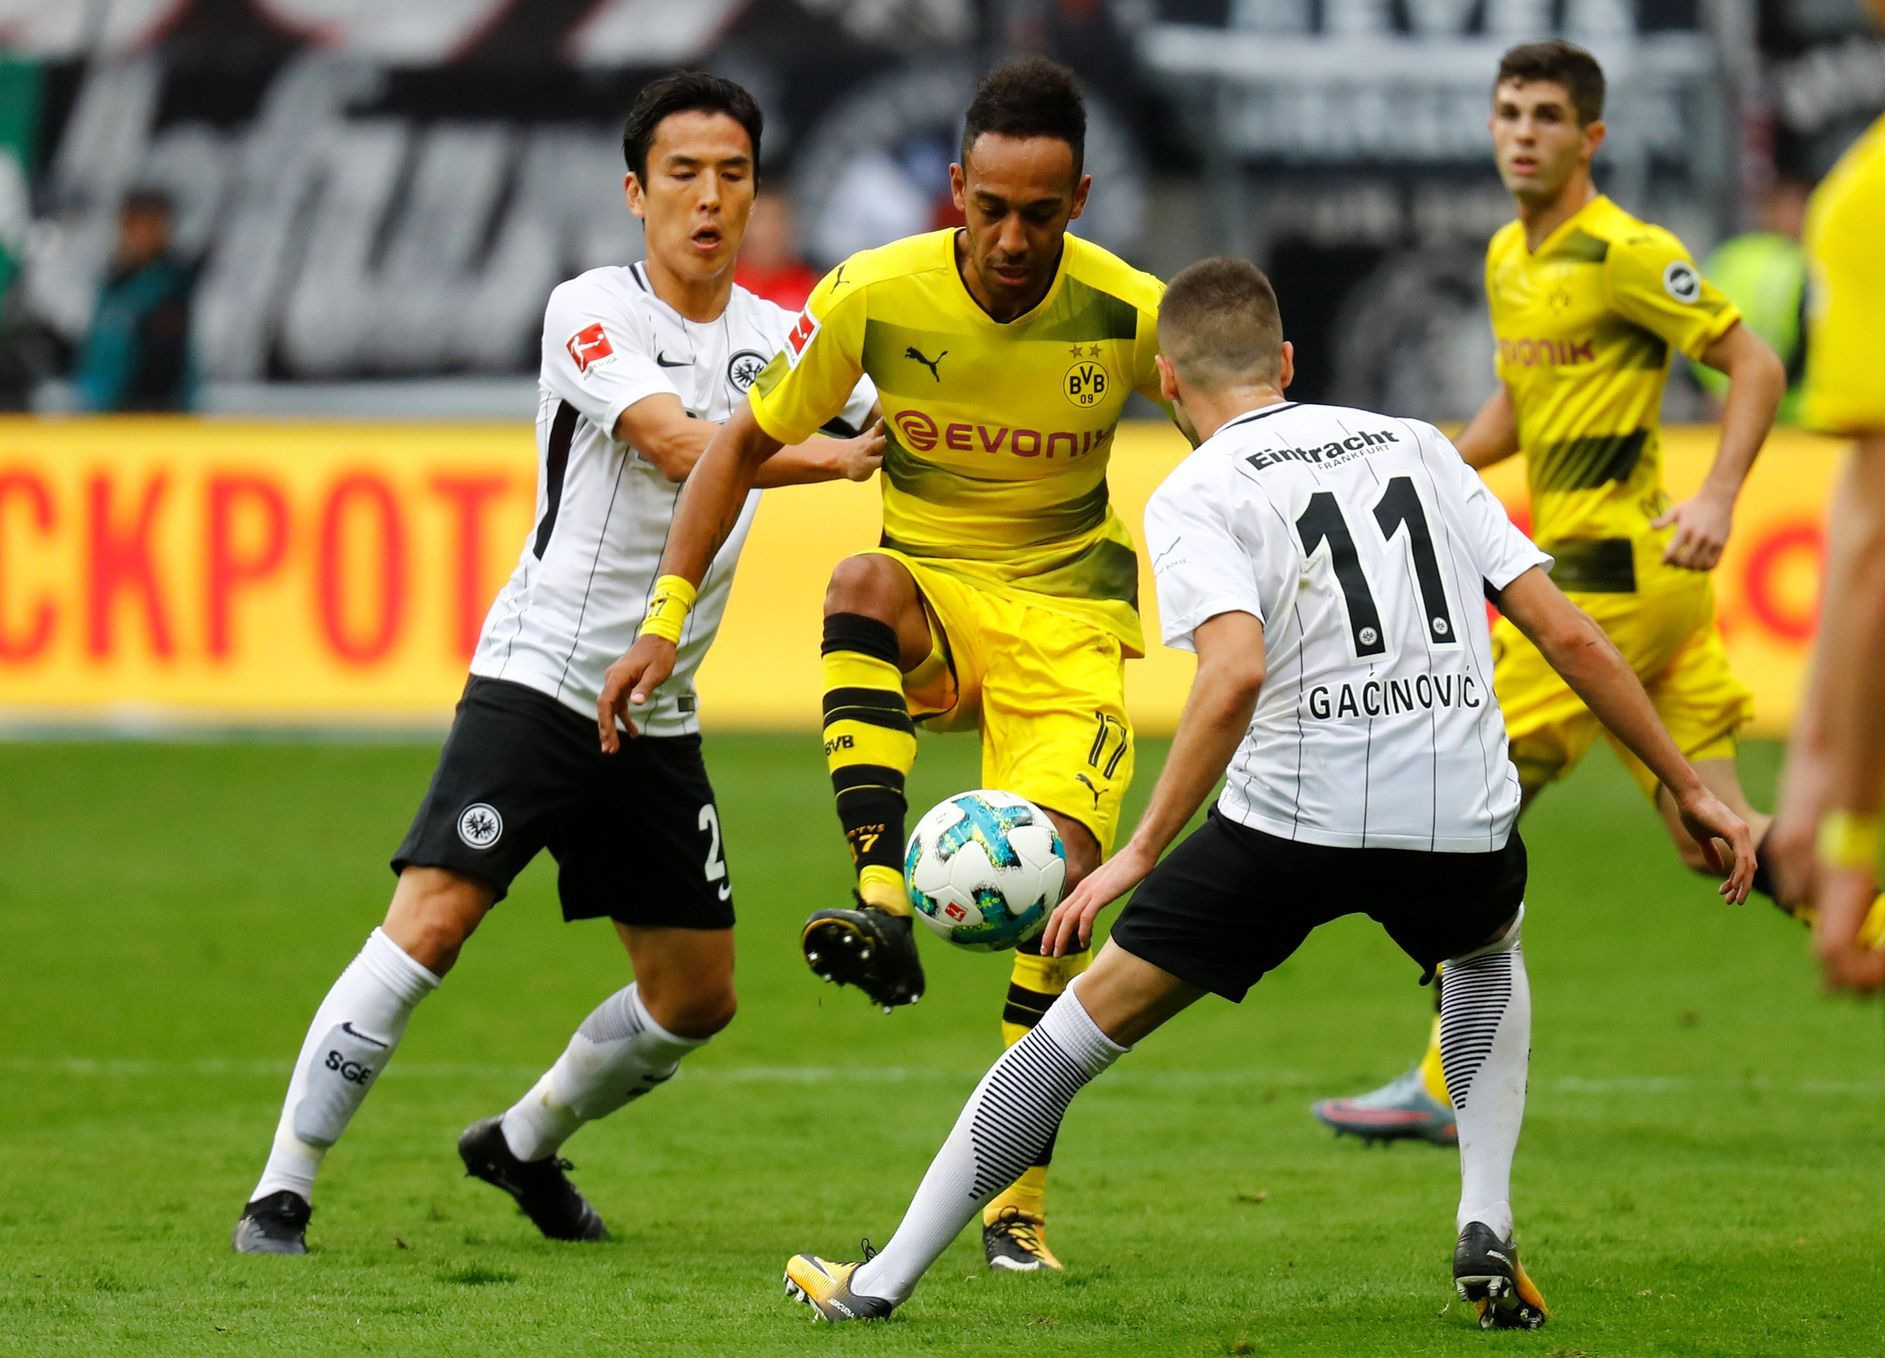 Dortmund ztratil ve Frankfurtu náskok dvou branek, ale zůstal o skóre před Bayernem